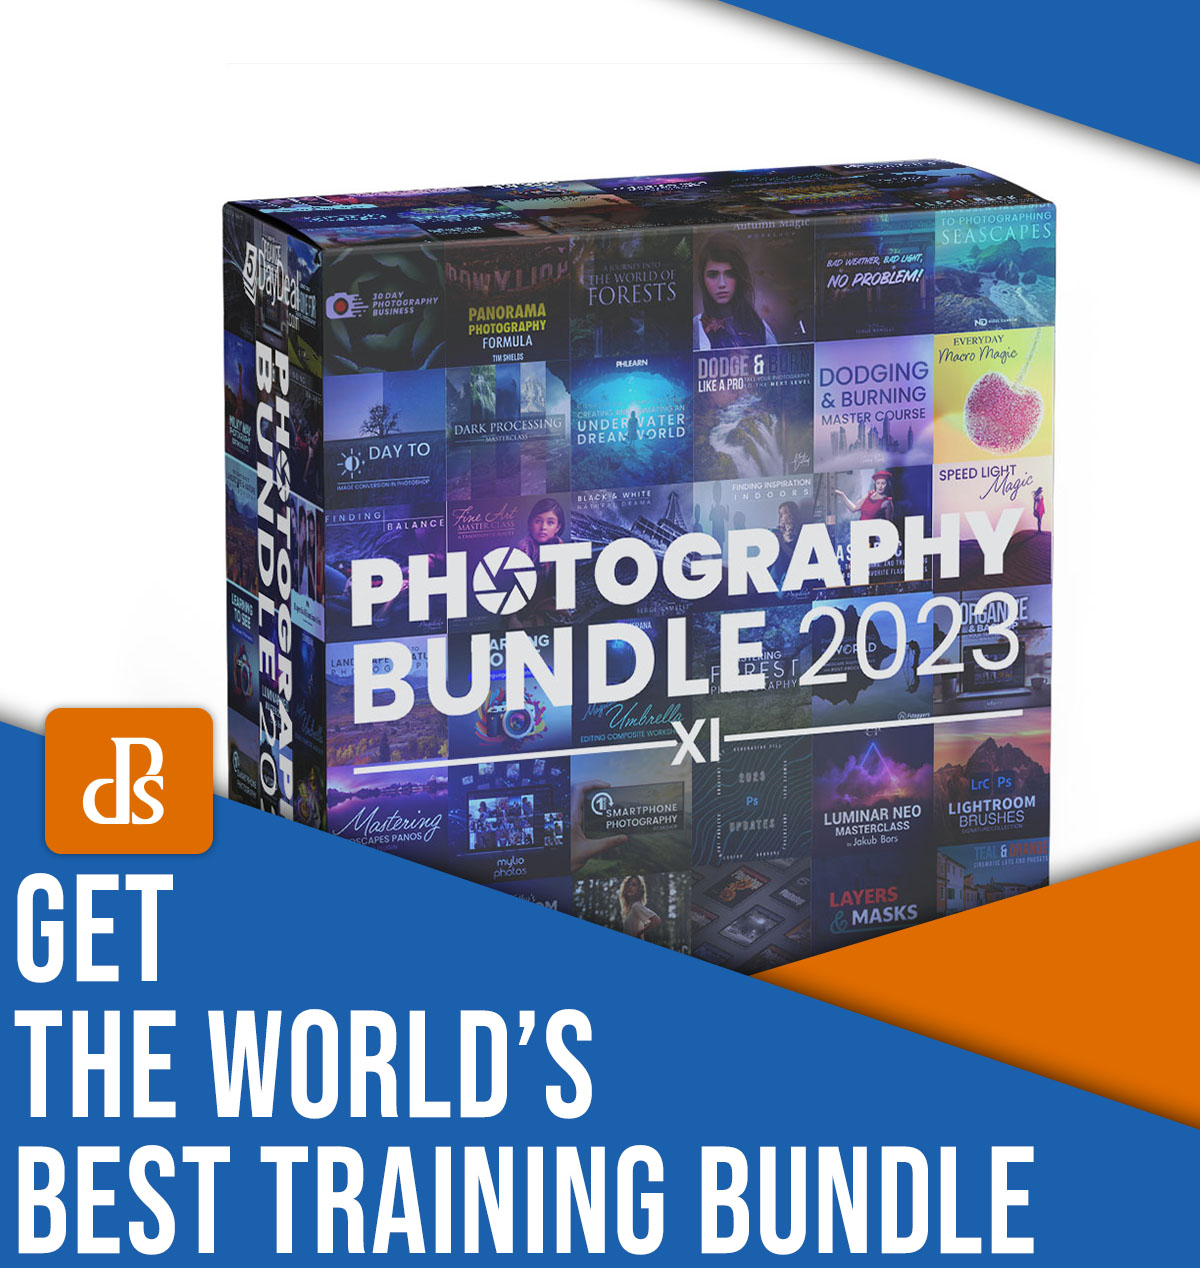 Obtenez le meilleur pack de formation en photographie au monde